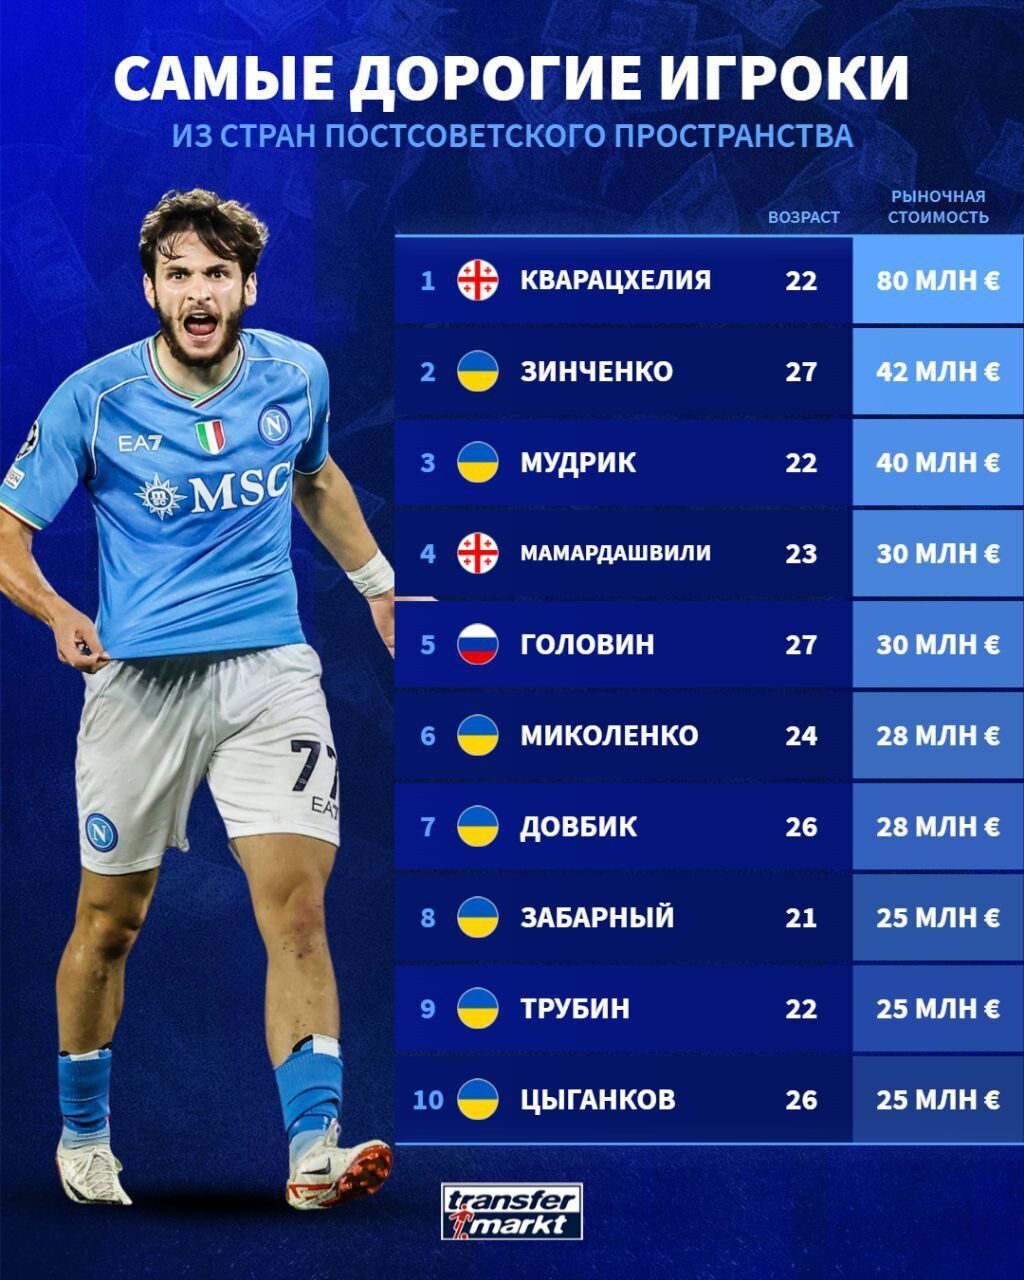 7 из 10 – украинцы: названы самые дорогие футболисты мира из "стран СНГ"